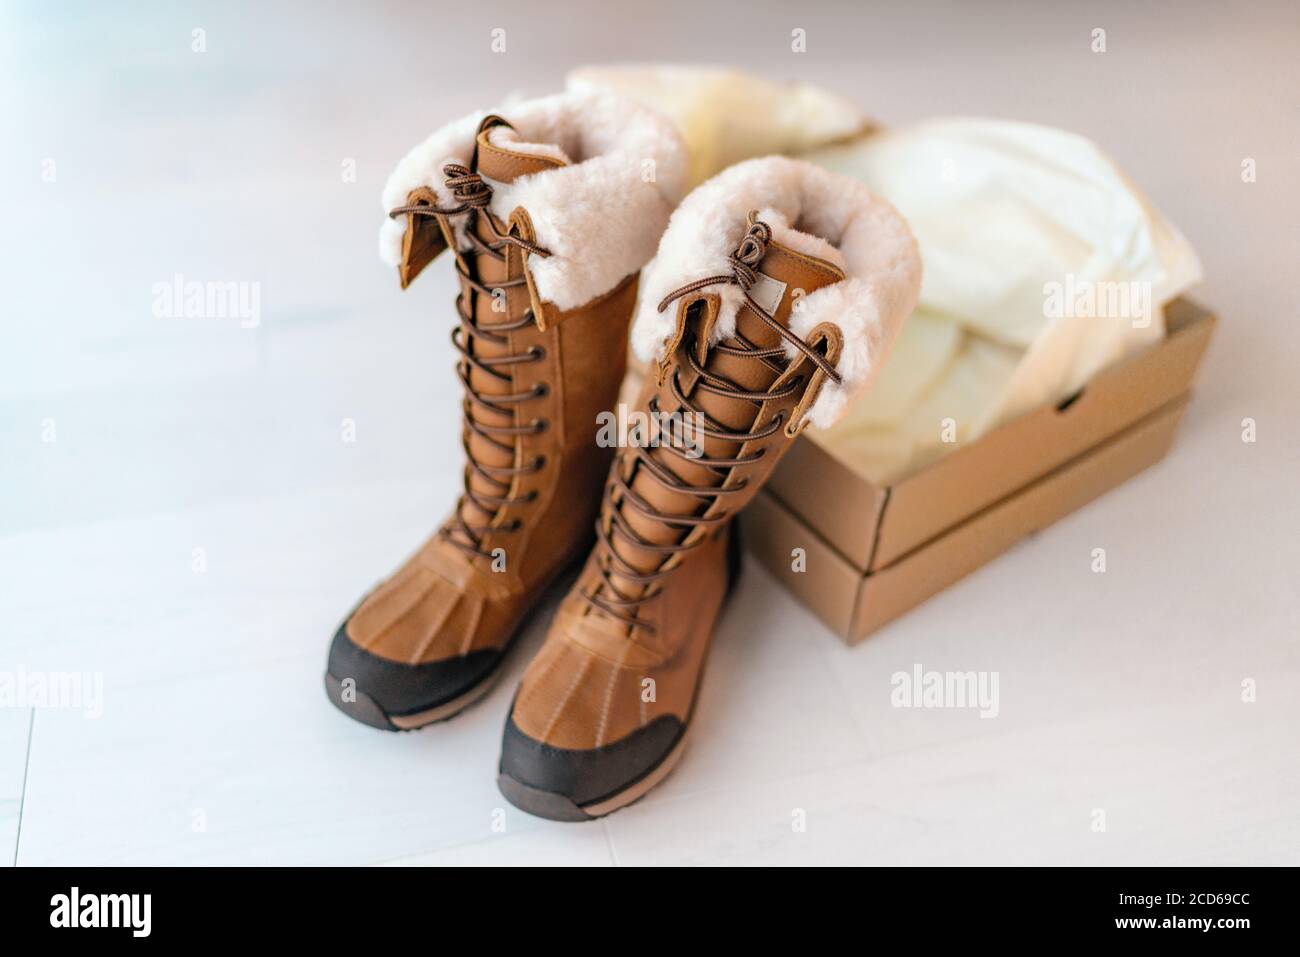 Neue Winter Wanderschuhe mit offenen Schuhkarton Kauf neuer Schuhe  Online-Shopping von zu Hause aus. Hohe wasserdichte Leder und Schaffell  Luxus Schuhe für den Winter Stockfotografie - Alamy